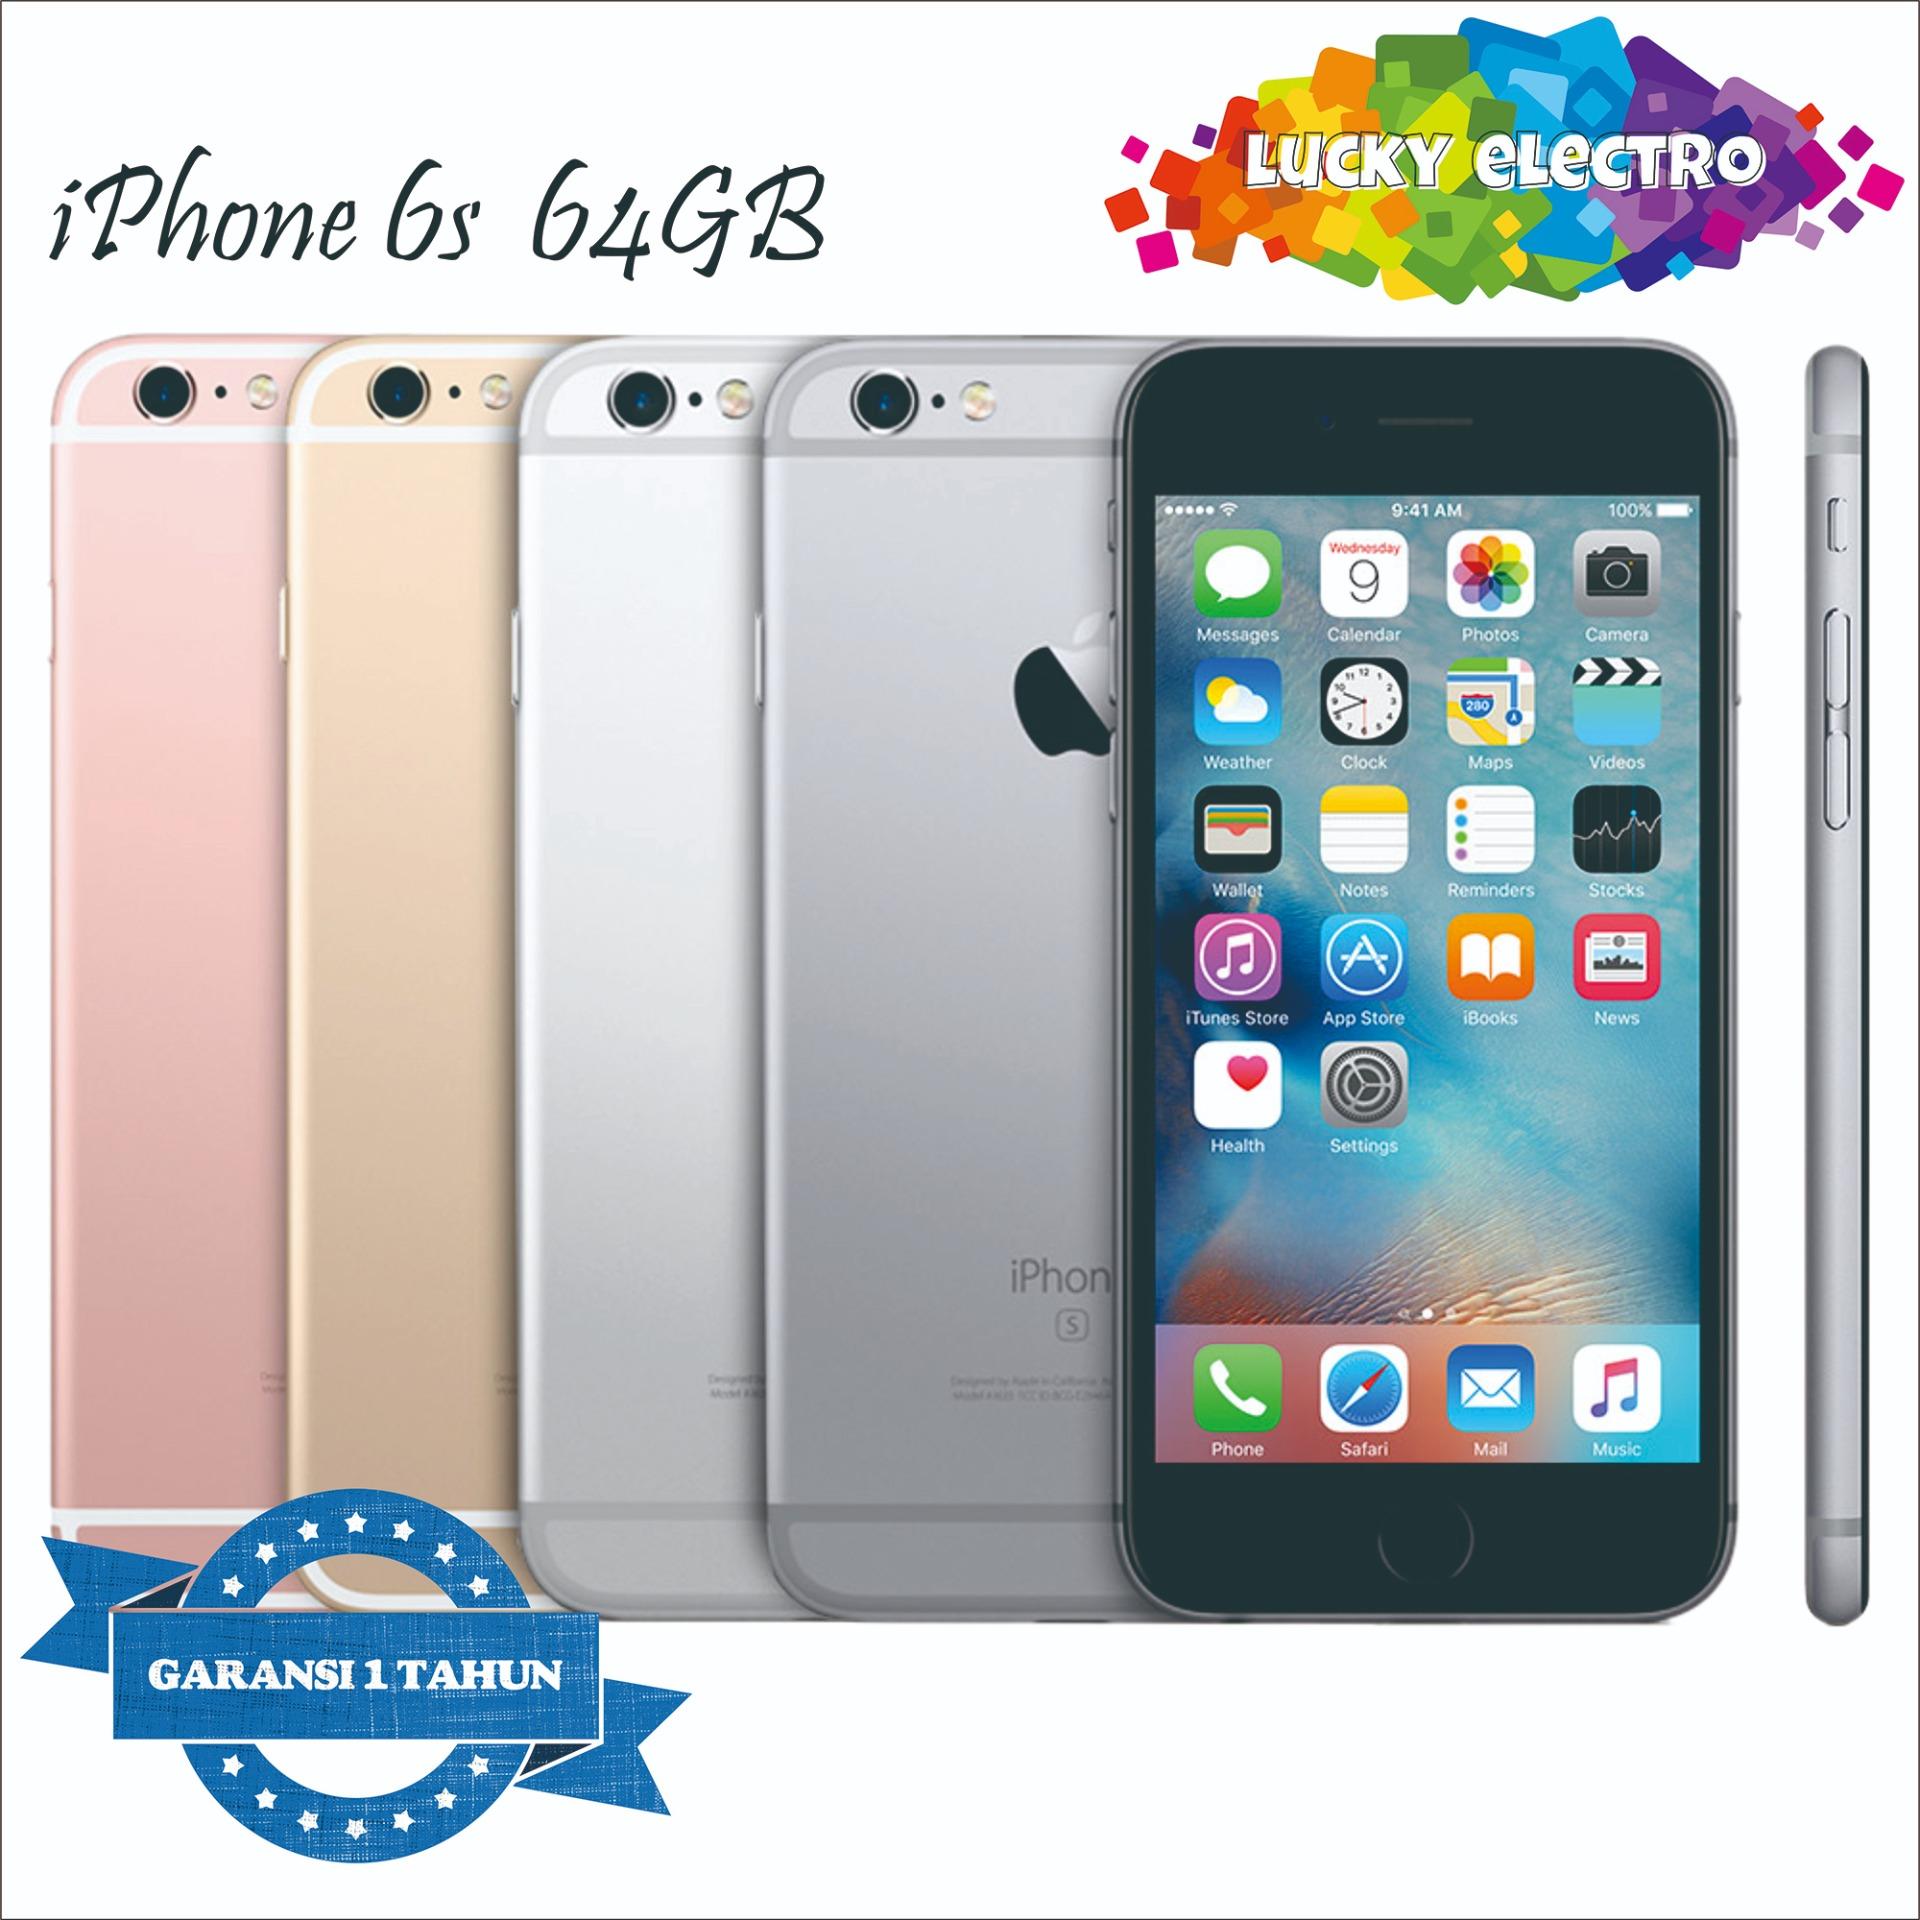 Harga Iphone 6s Apple Store Indonesia - Syurat d